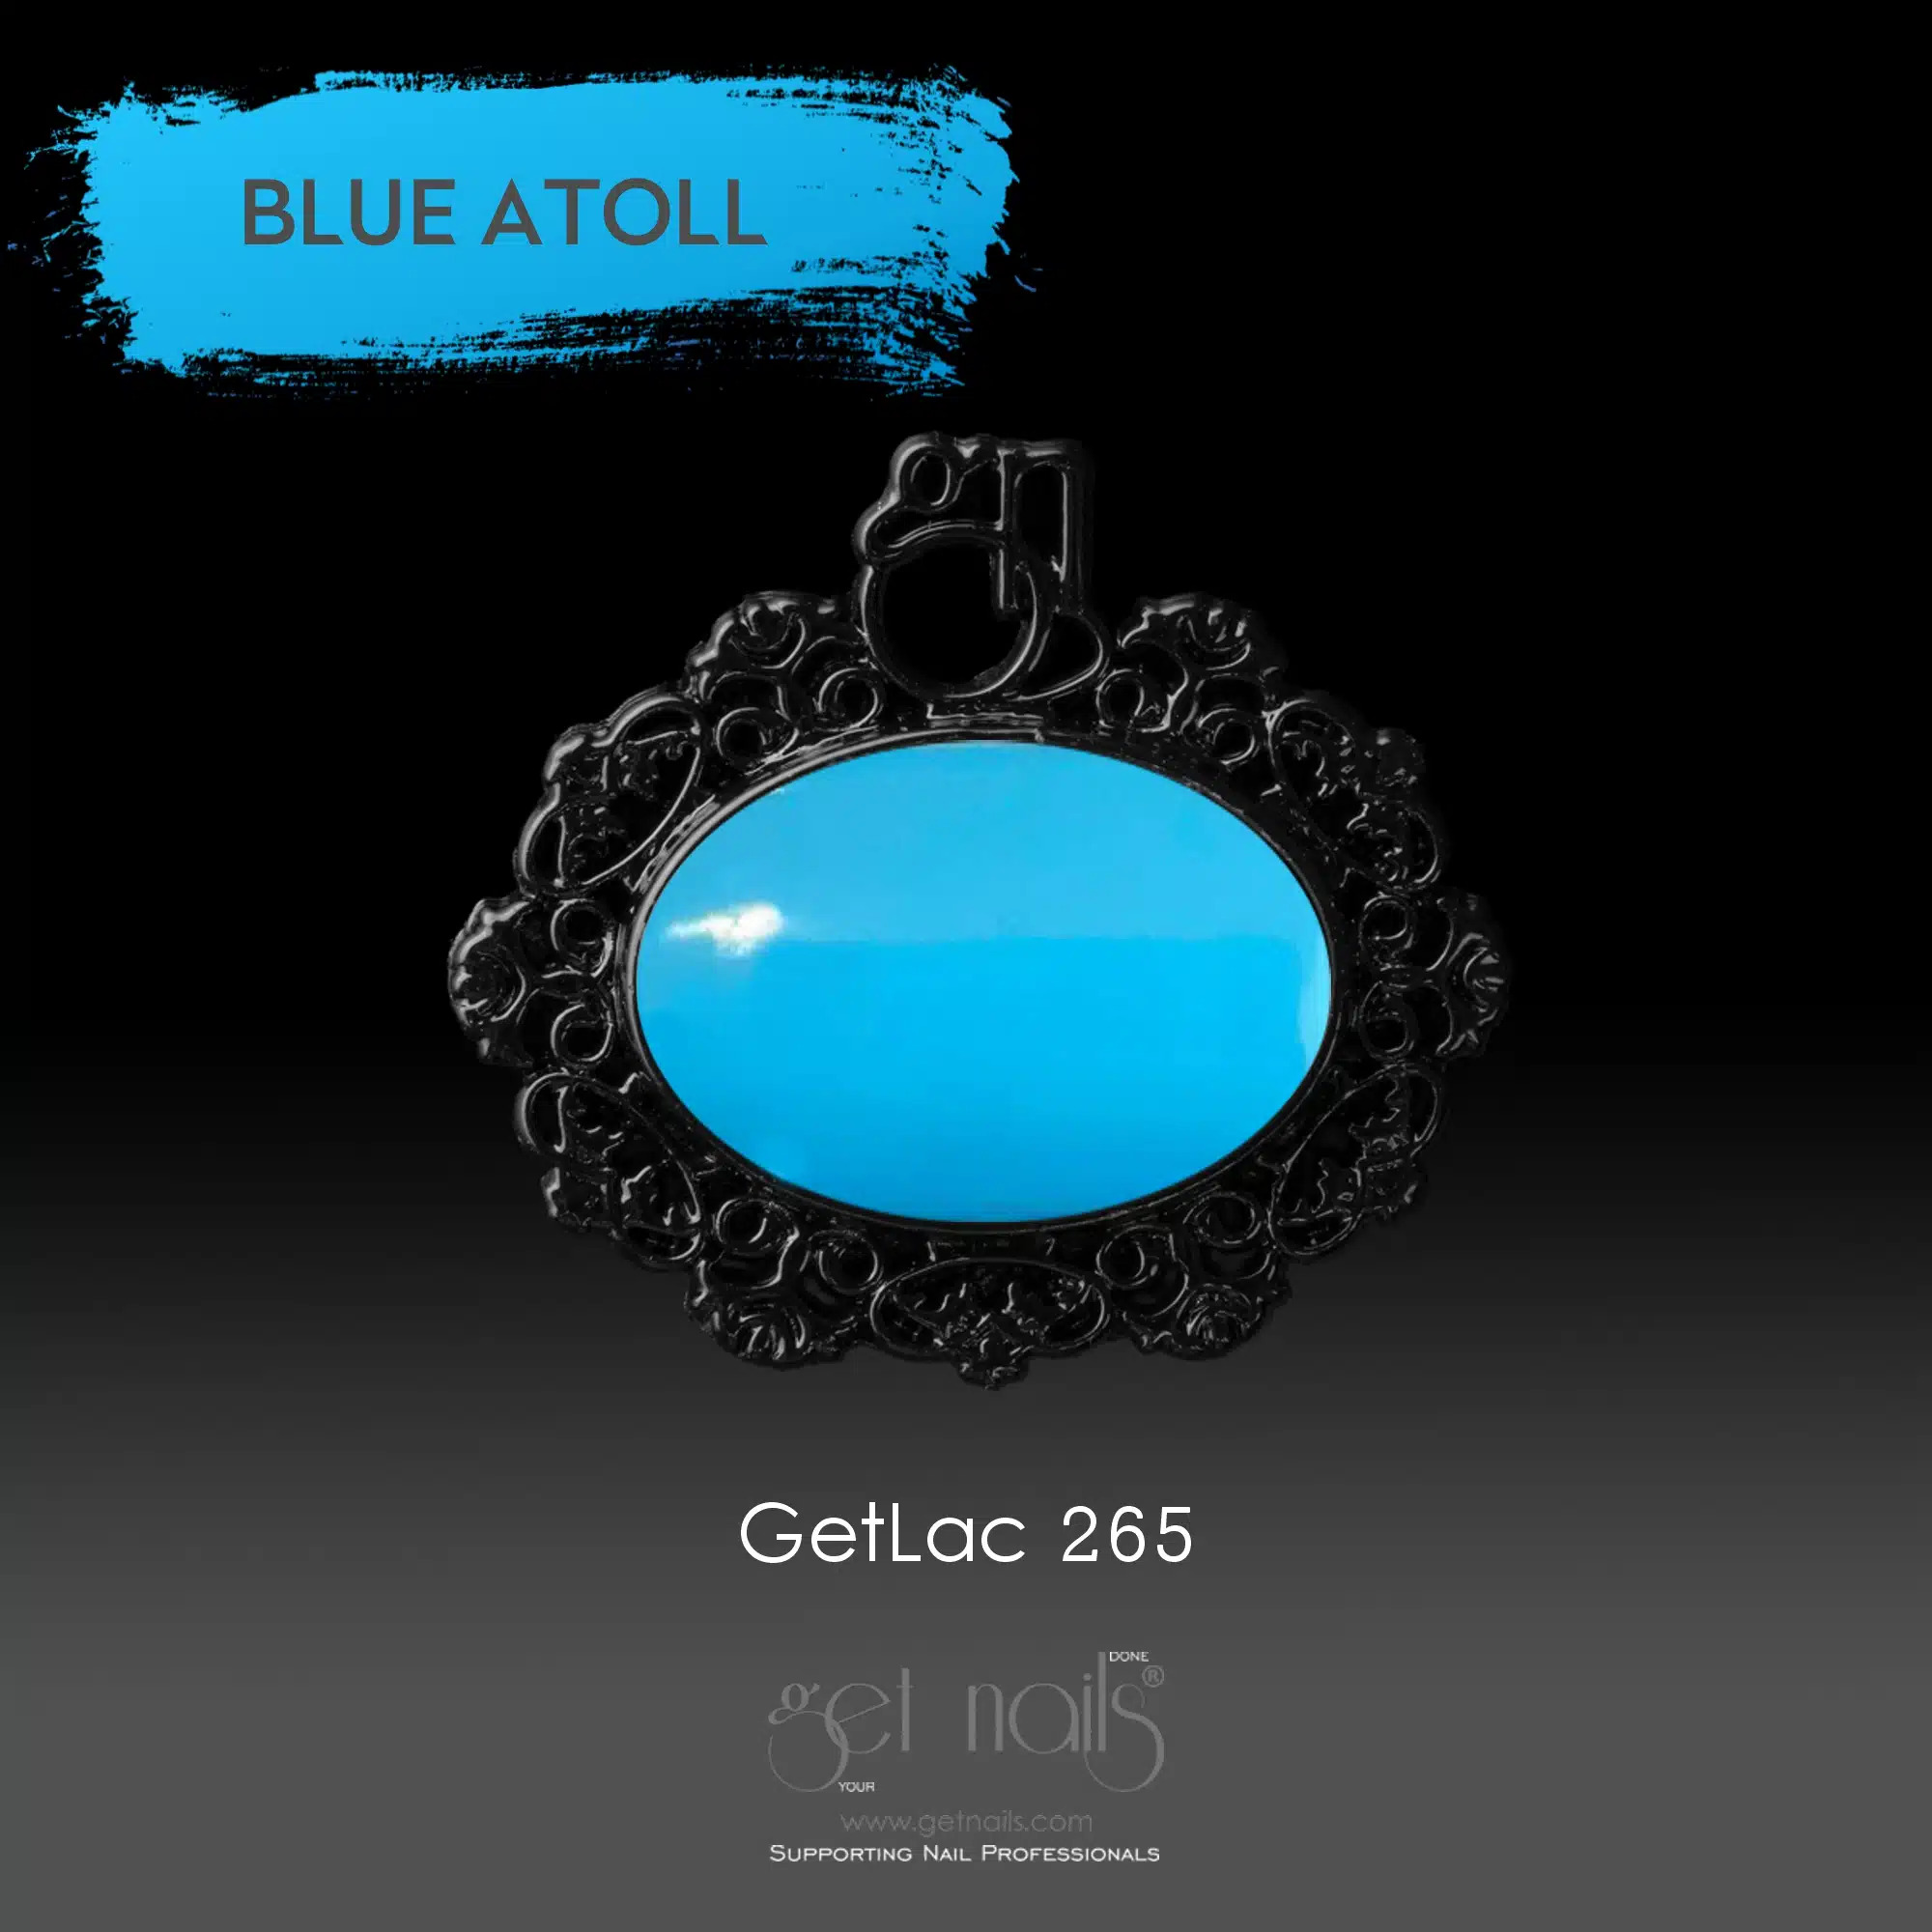 Get Nails Austria - GetLac 265 15g Blue Atoll